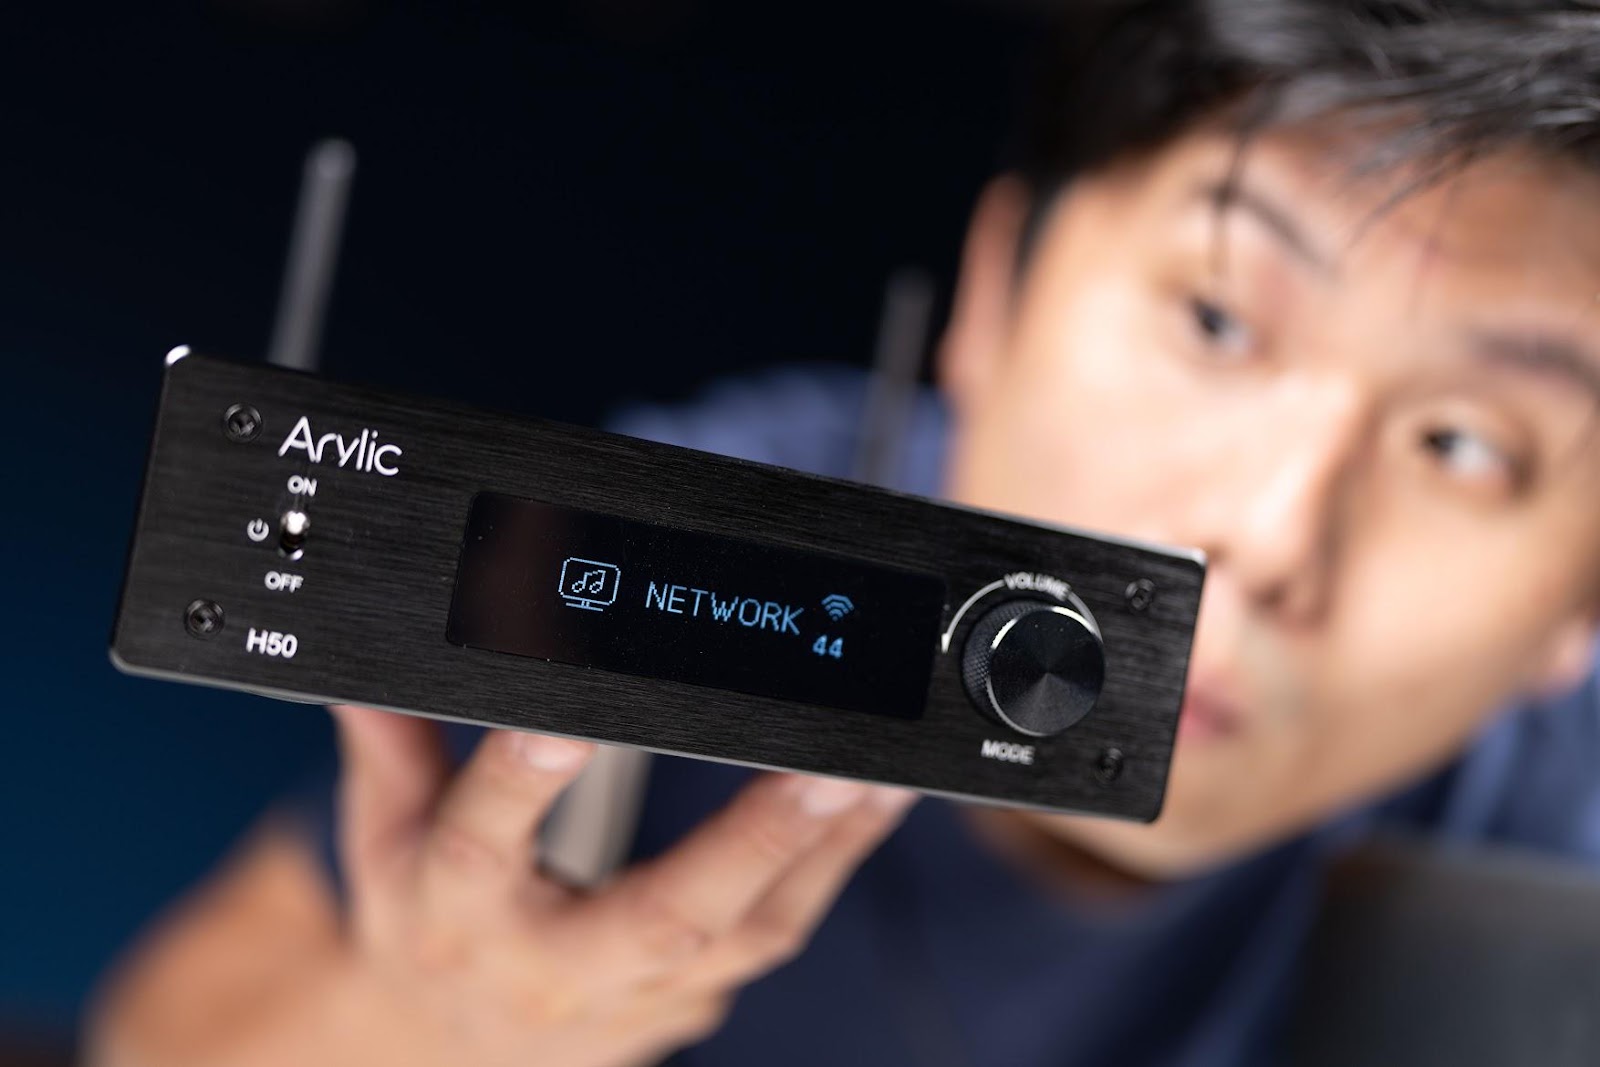 小系統 Hi-Fi 構建術 Arylic H50 串流擴大機 開箱｜智慧音箱、WiiM、ARC、藍牙喇叭、AirPlay 2、Tidal、Qobuz、Roon、Hi-Fi、KKBOX Hi-Res、高音質串流、發燒音響、Chromecast｜科技狗 - 科技狗 3C DOG